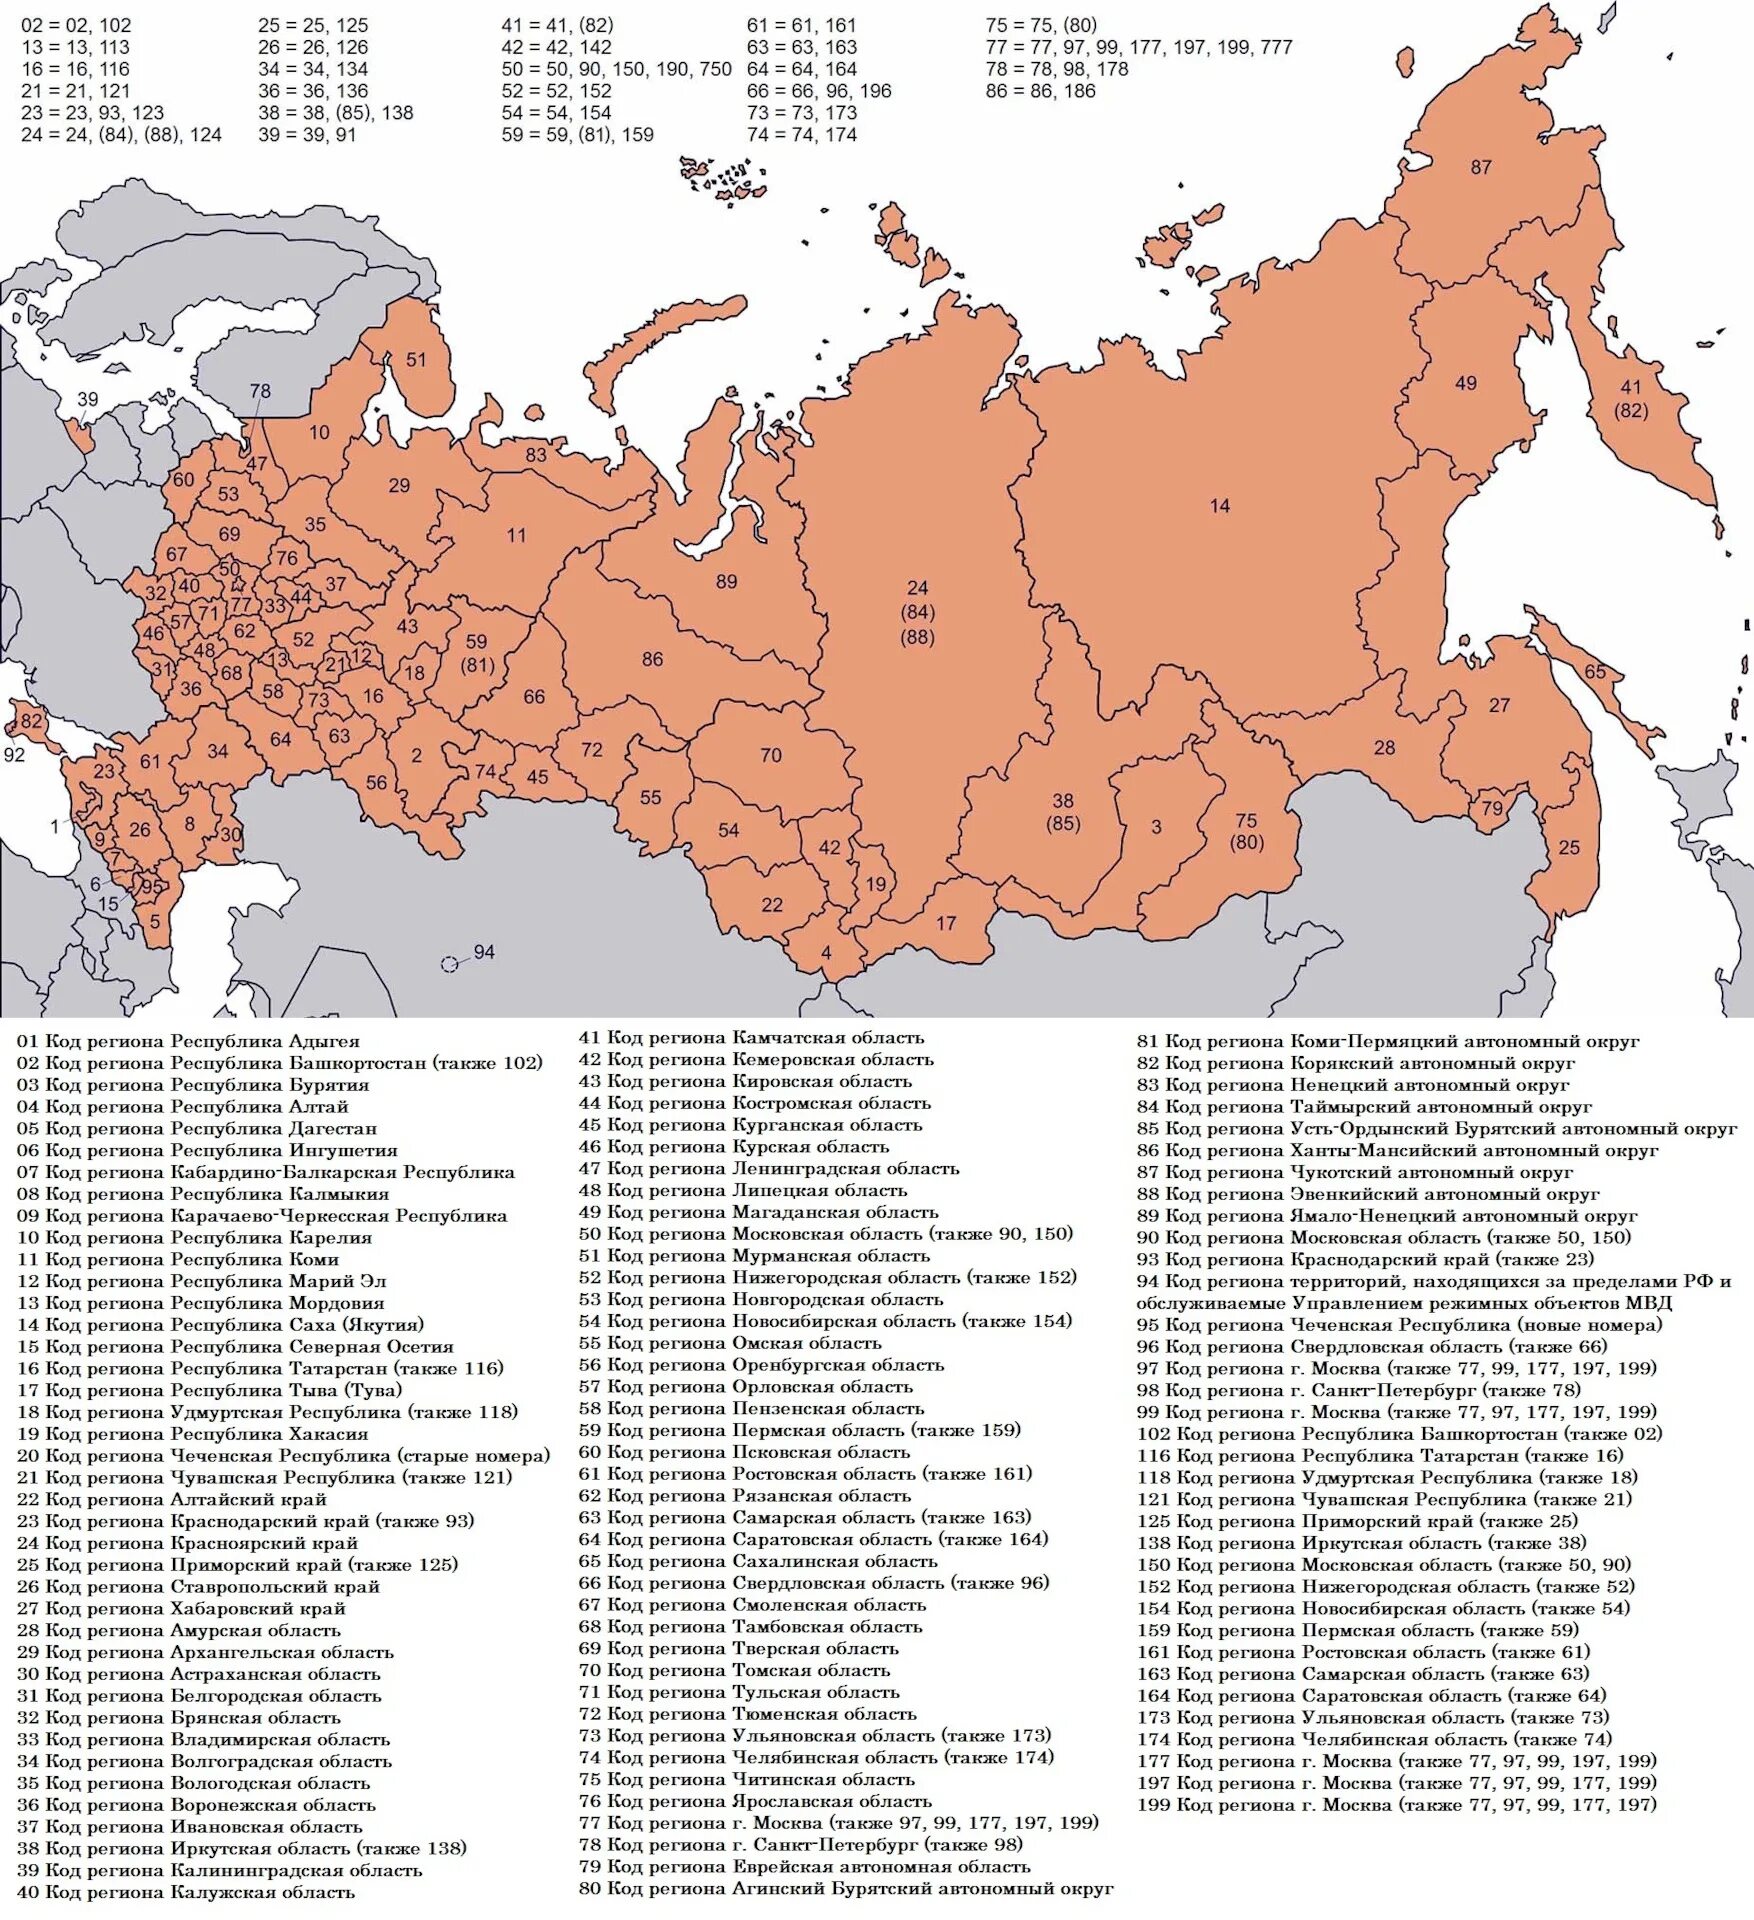 Коды регионов на автомобильных. Kodi regionov. Карта автомобильных регионов России. Автомобильные коды регионов России таблица.